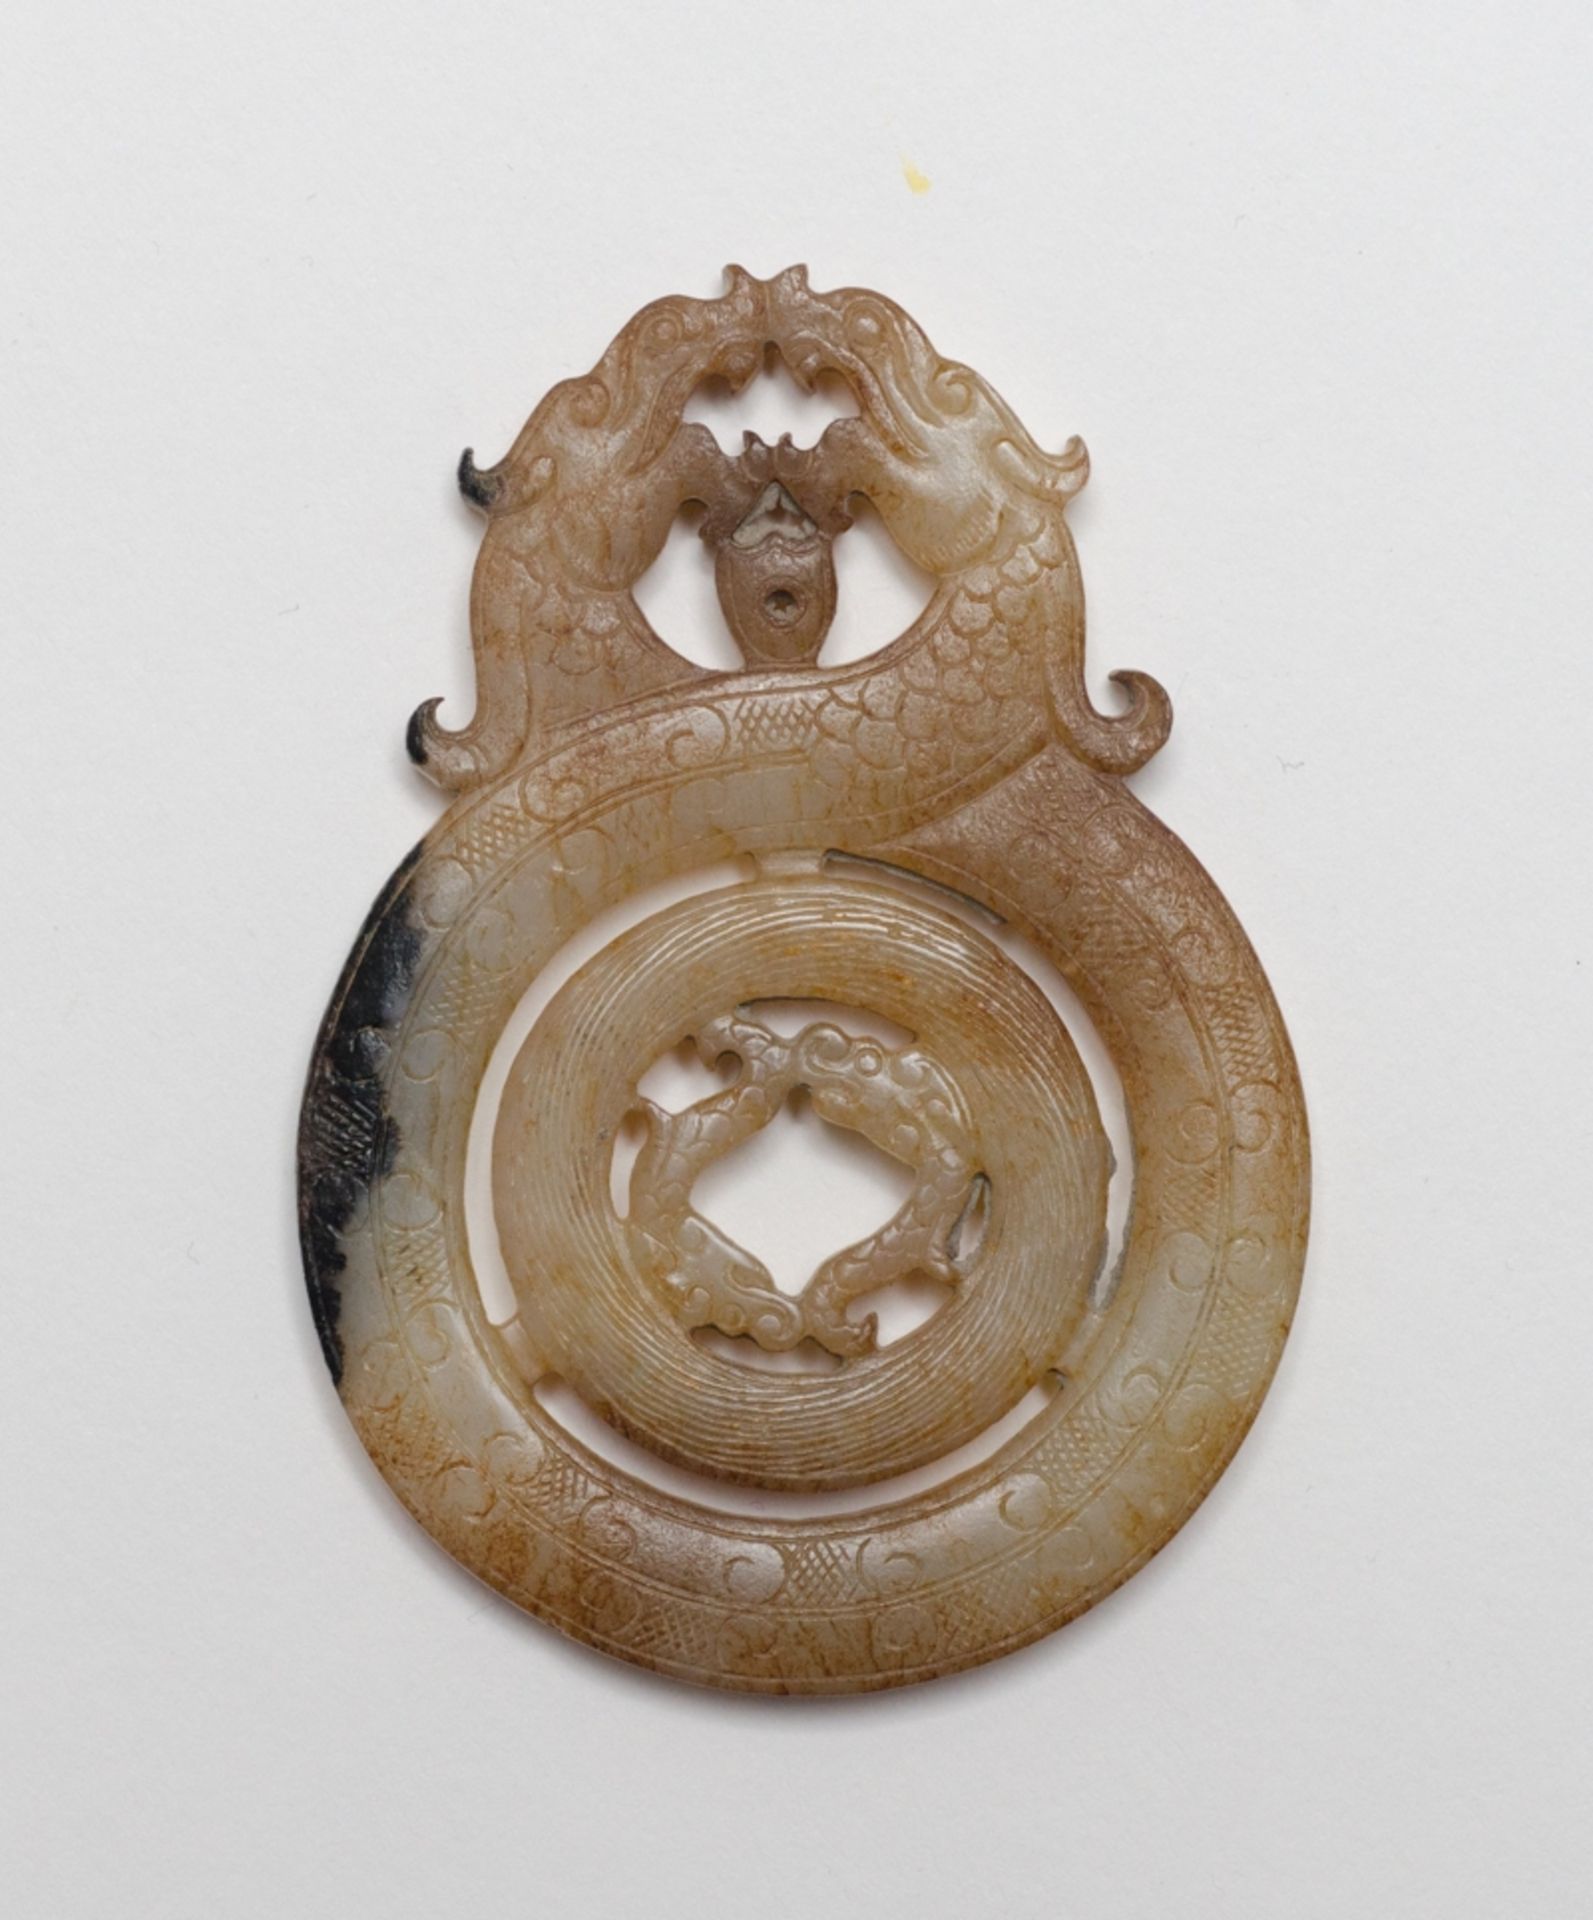 SCHMUCKANHÄNGER MIT VIER DRACHENJade. China, Qing-Dynastie (1644- 1912), ca. 19. Jh.Der innere Ring